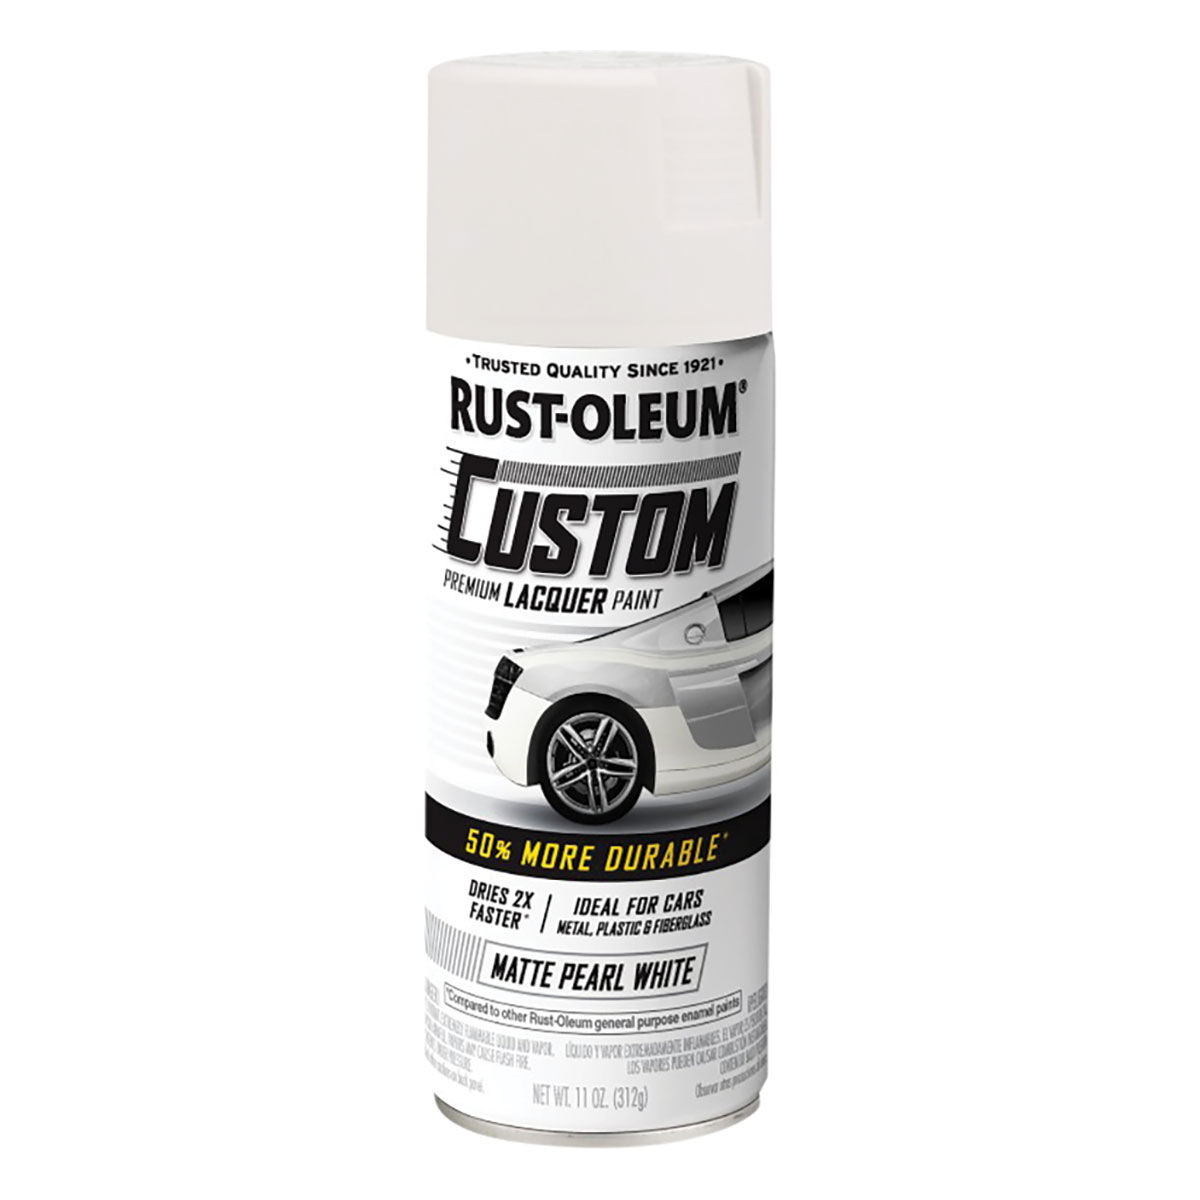 Rust-Oleum Custom Premium Lacquer Paint, Matt Pearl White - 312g, , scaau_hi-res